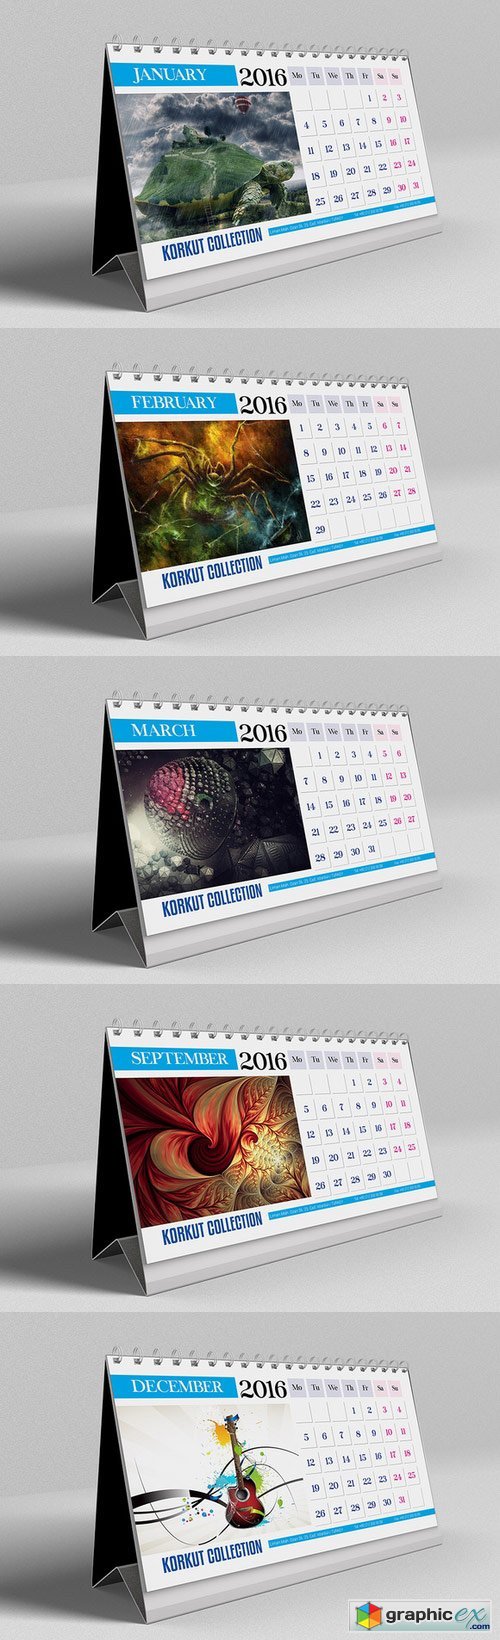 2016 Desk Calendar 443248